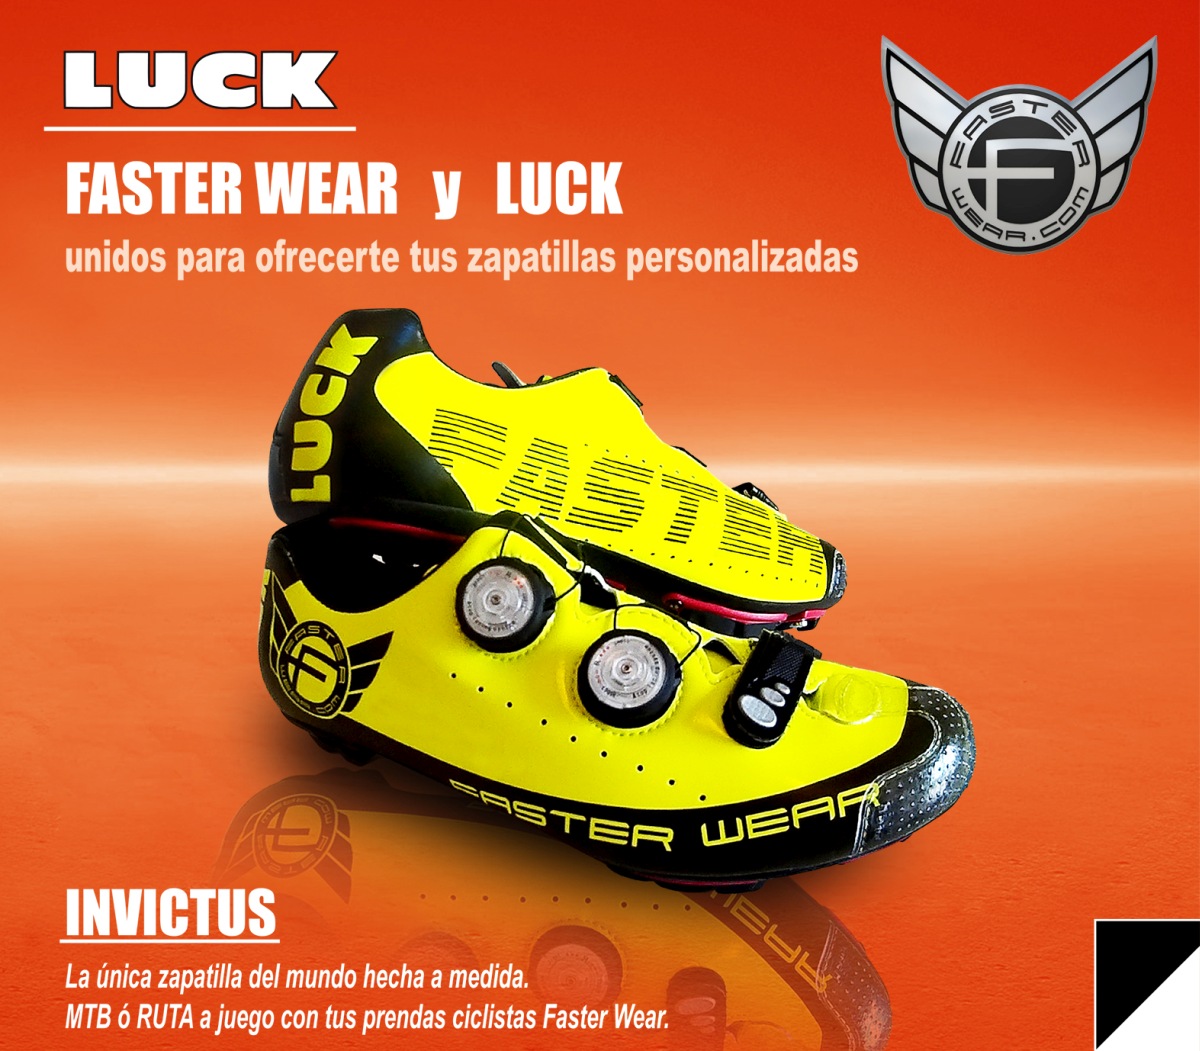 Ropa y zapatillas personalizadas a de la mano de Faster Wear y Luck